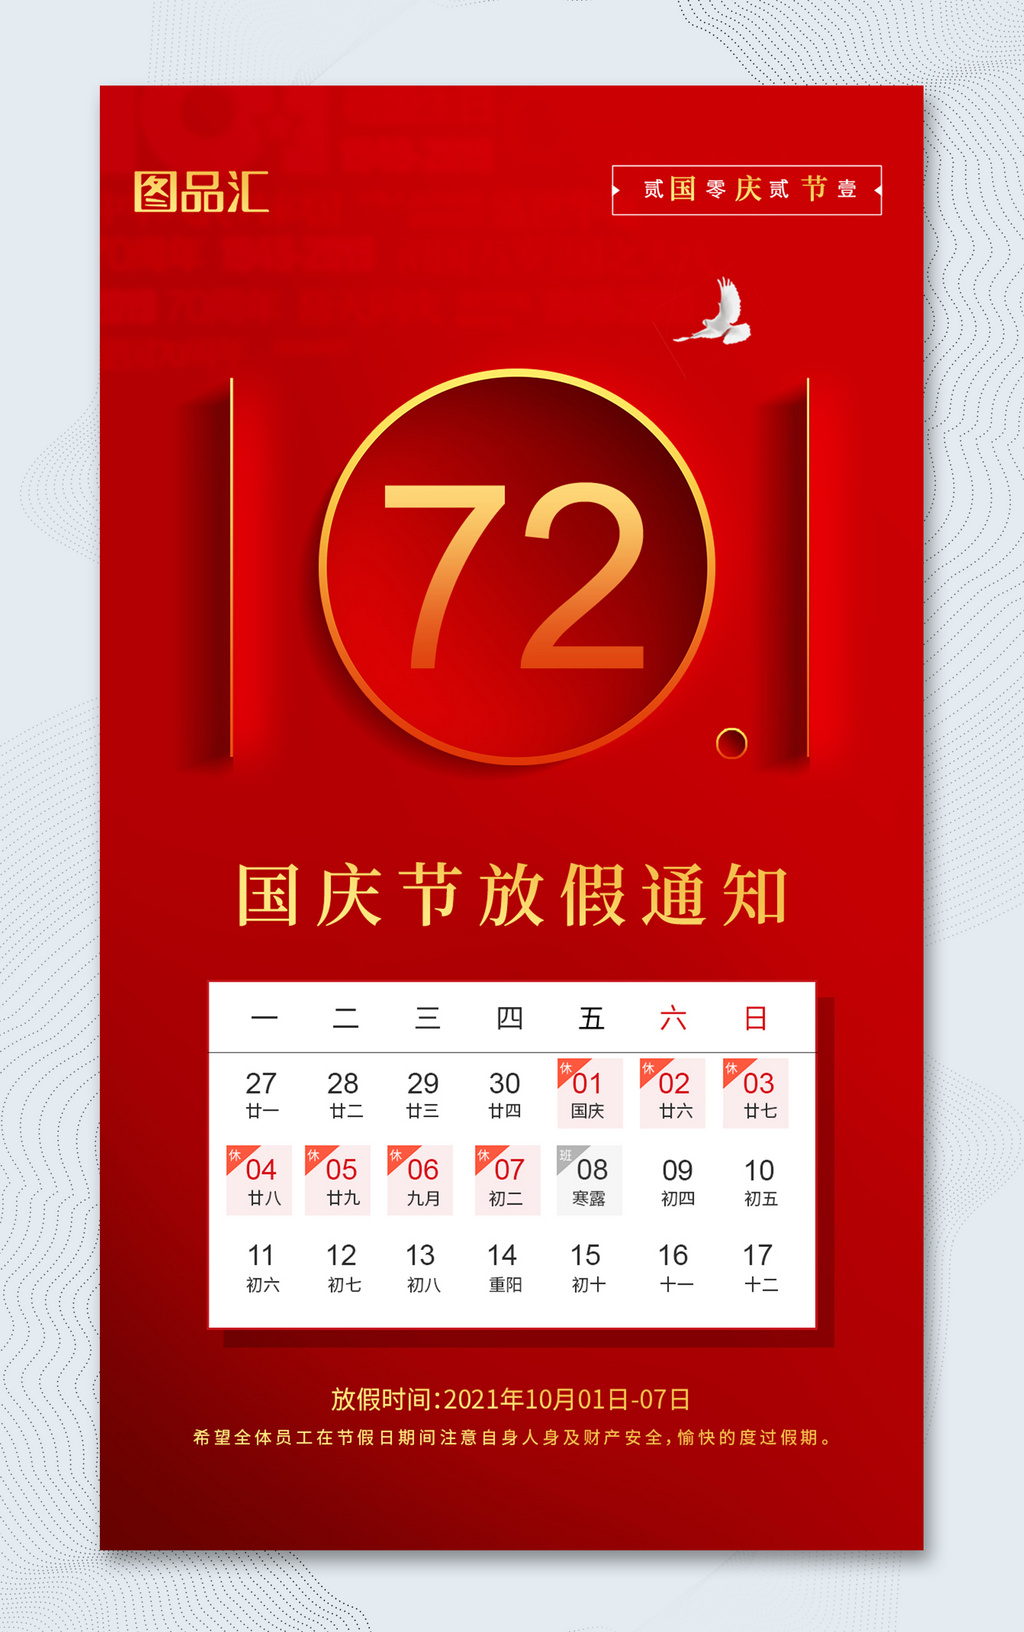 简约红色大气10.1国庆节放假通知宣传海报